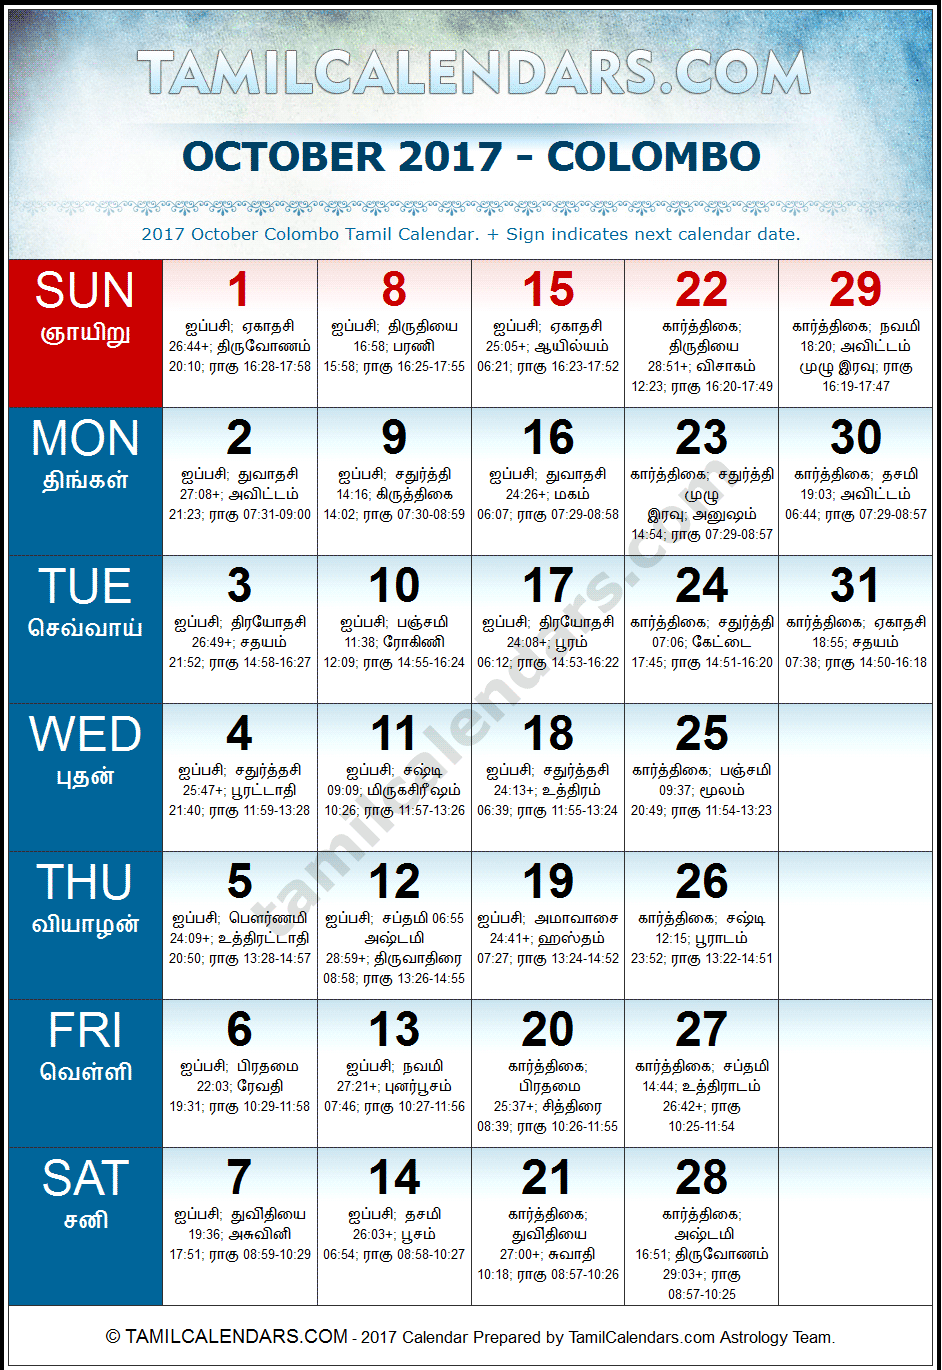 October 2017 Tamil Calendar for Sri Lanka (Colombo)